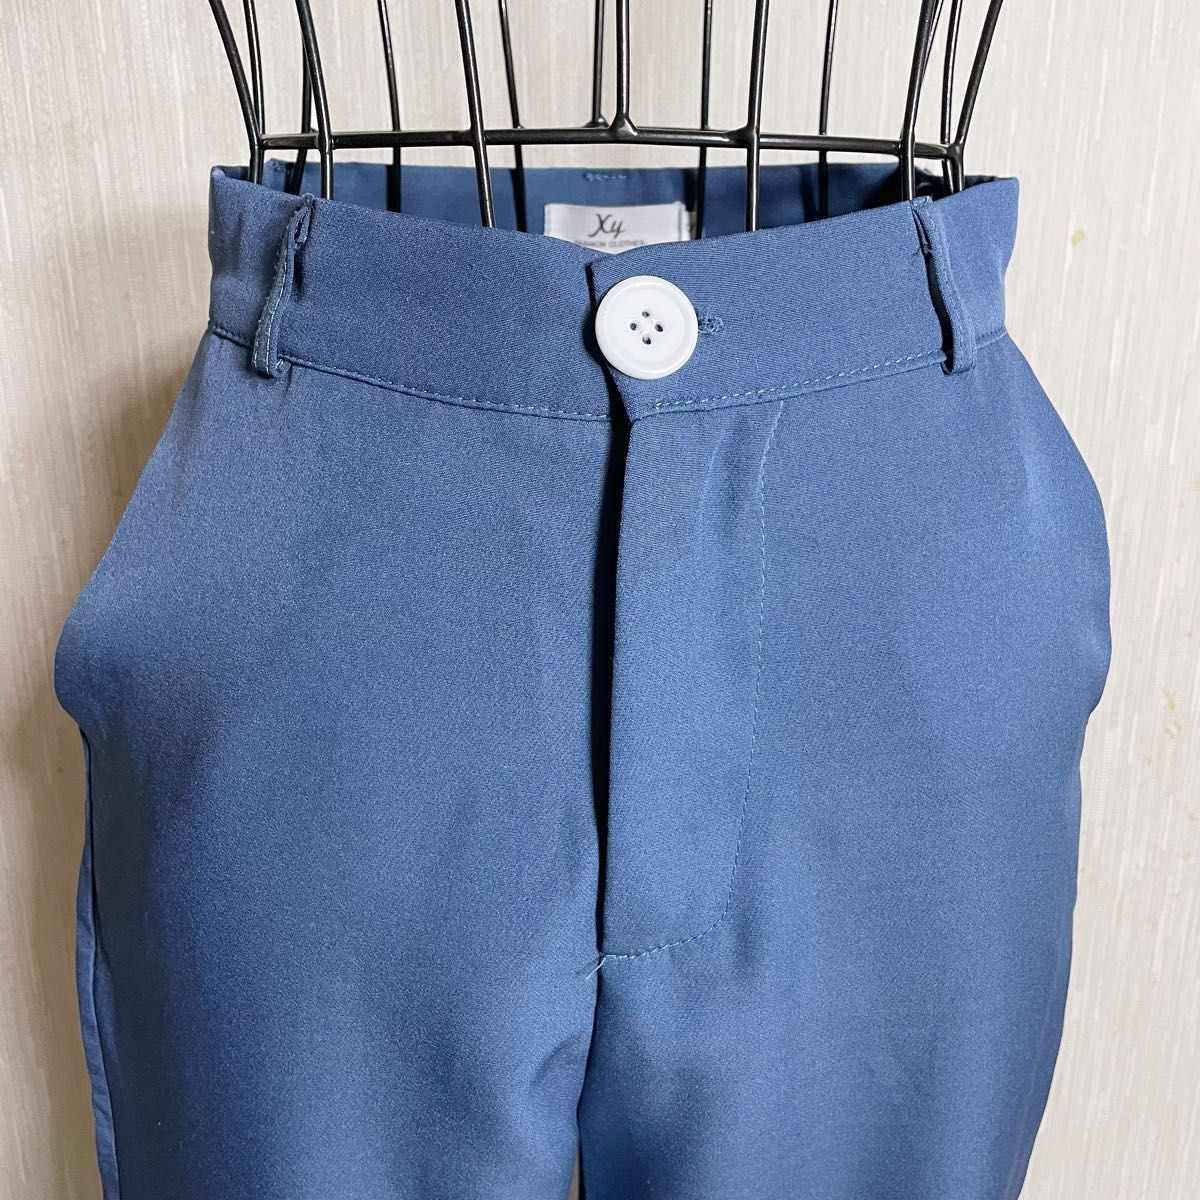 【FASHION CLOTHES】カジュアルパンツ　レディース　ブルー　Sサイズ